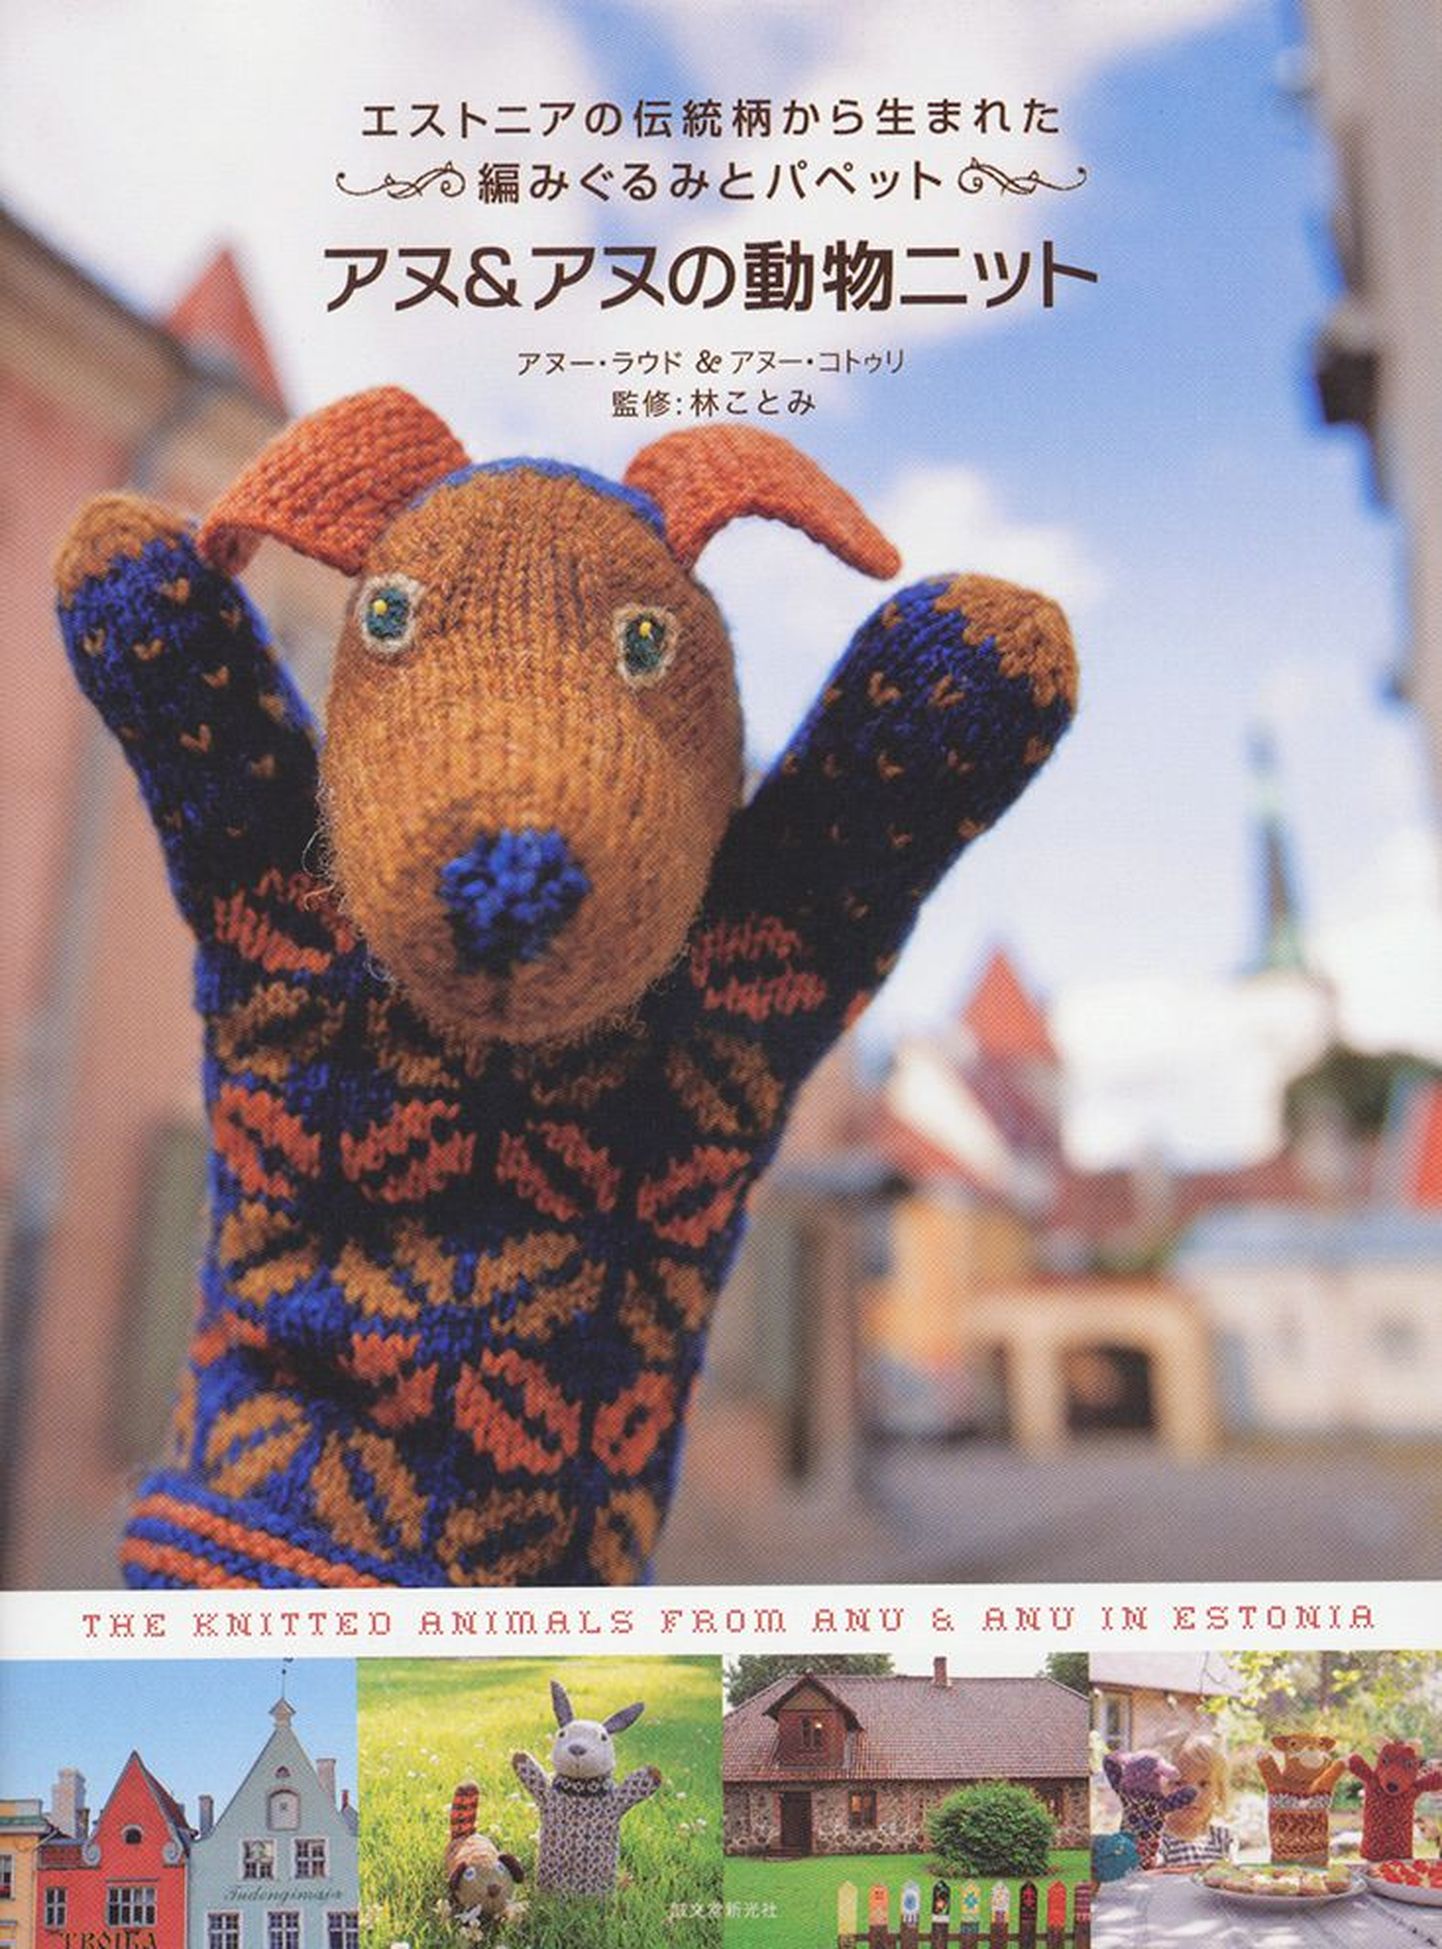 Anu Kotli ja Anu Raua toel valminud raamat viib Eesti rahvakunsti kõige ilusamal ja armsamal moel jaapanlasteni.